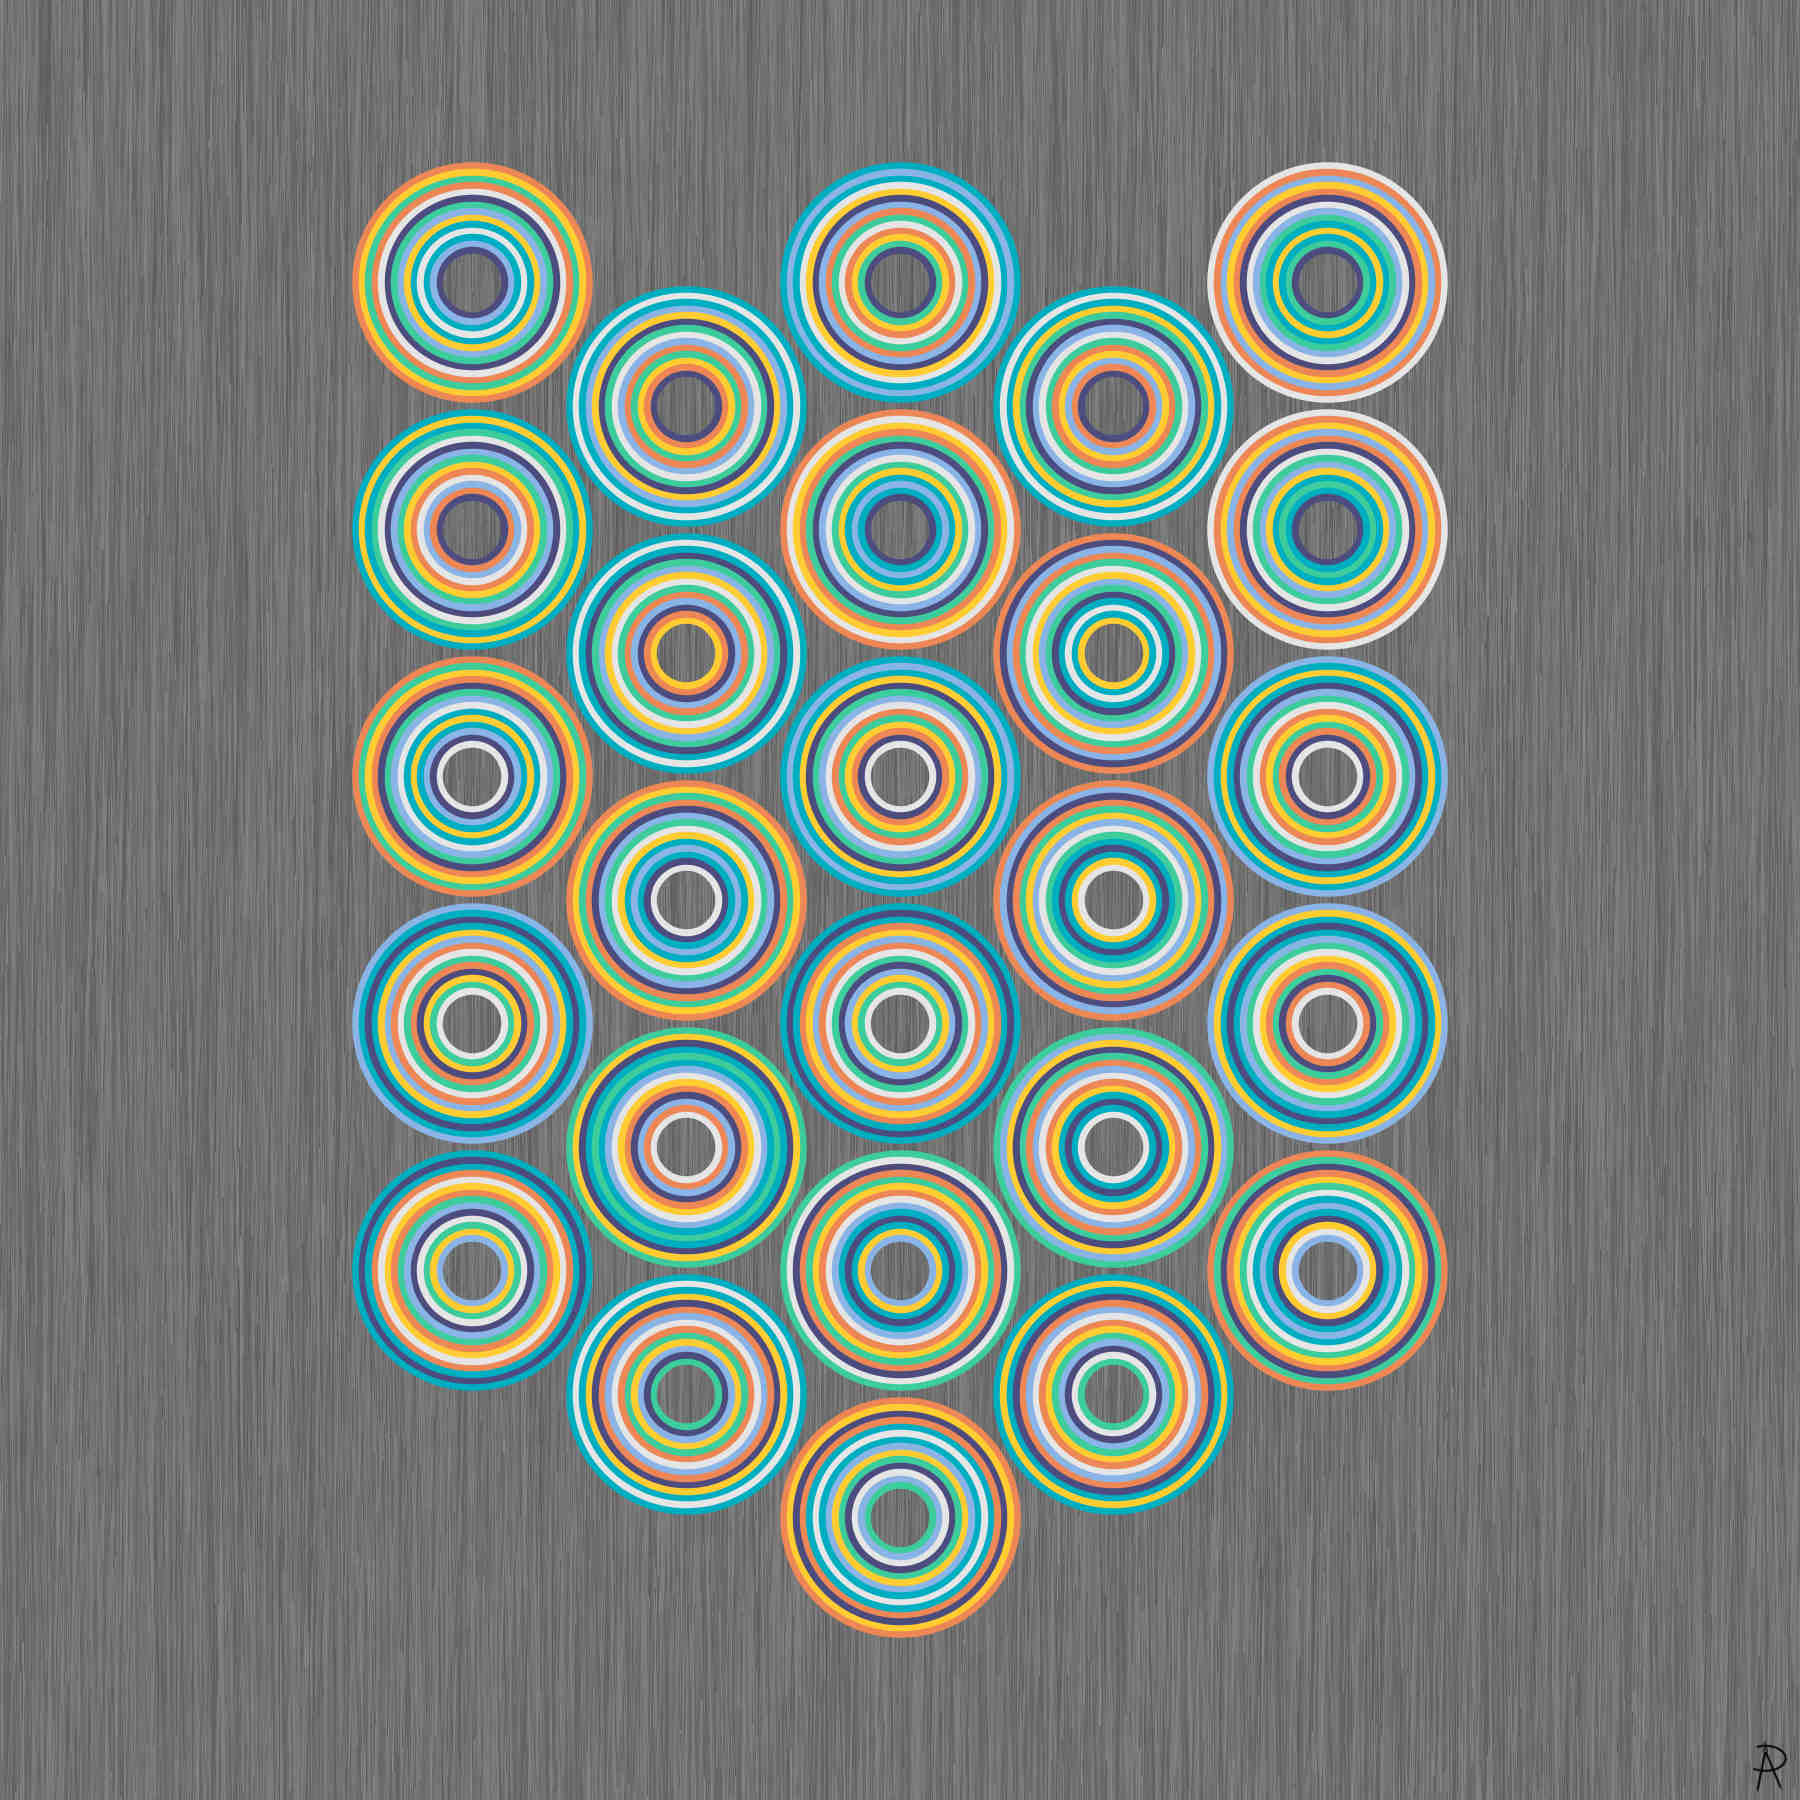 Septenary Circles (Artwork)